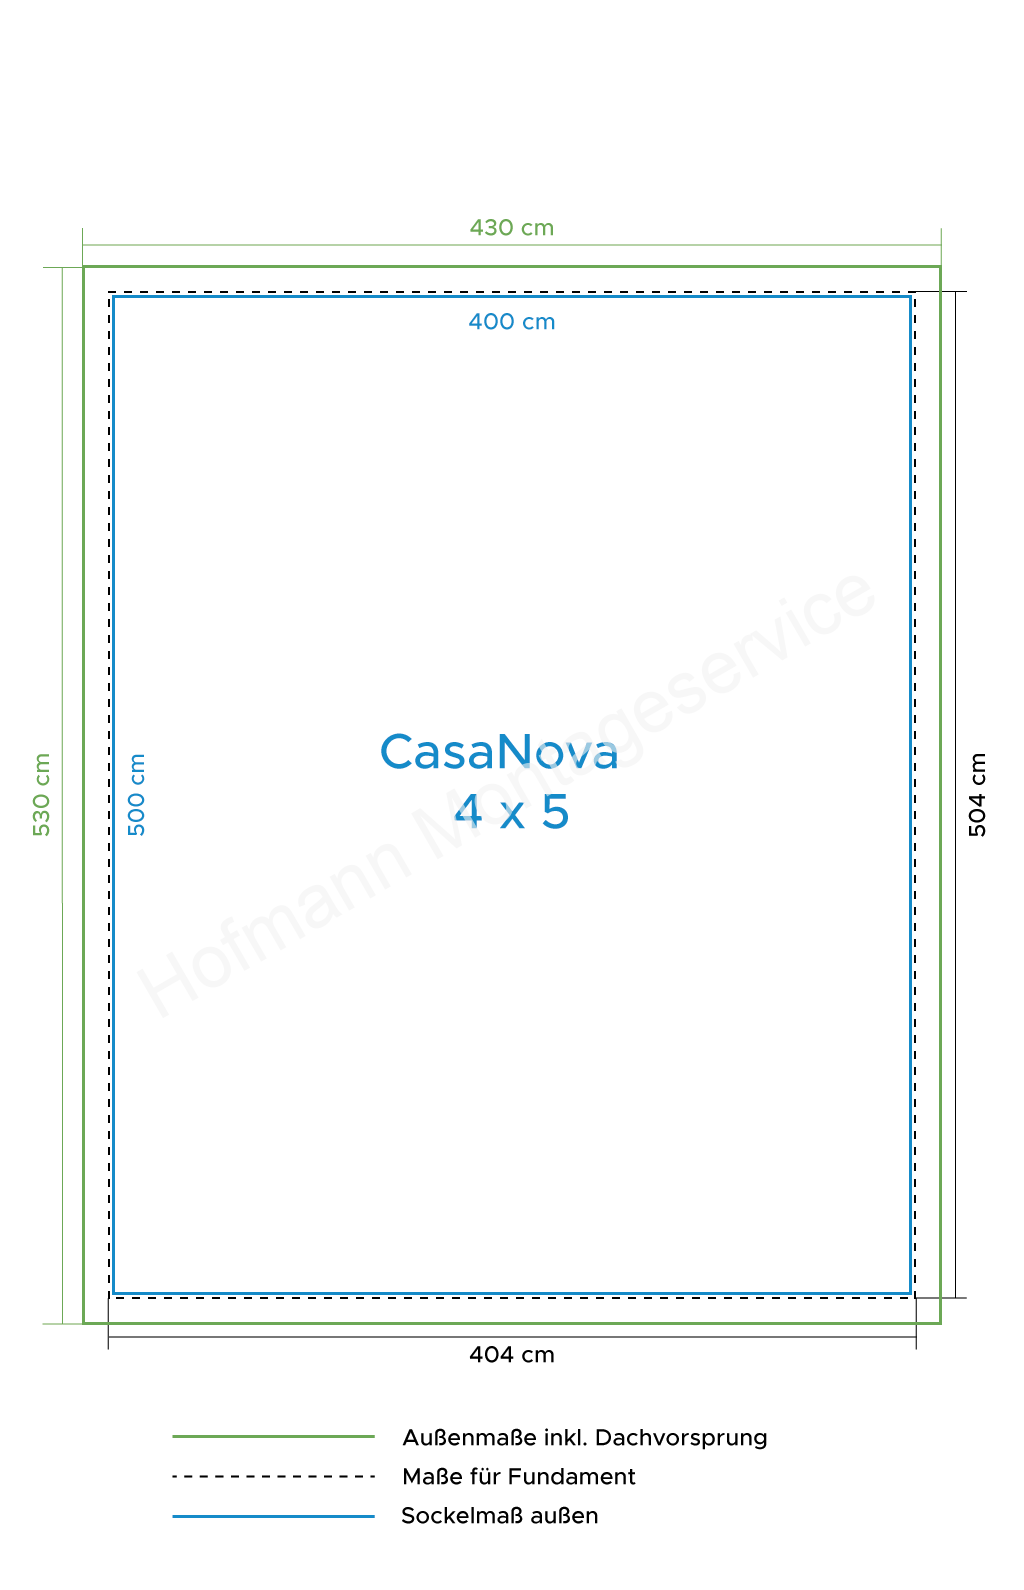 CasaNova 4x5